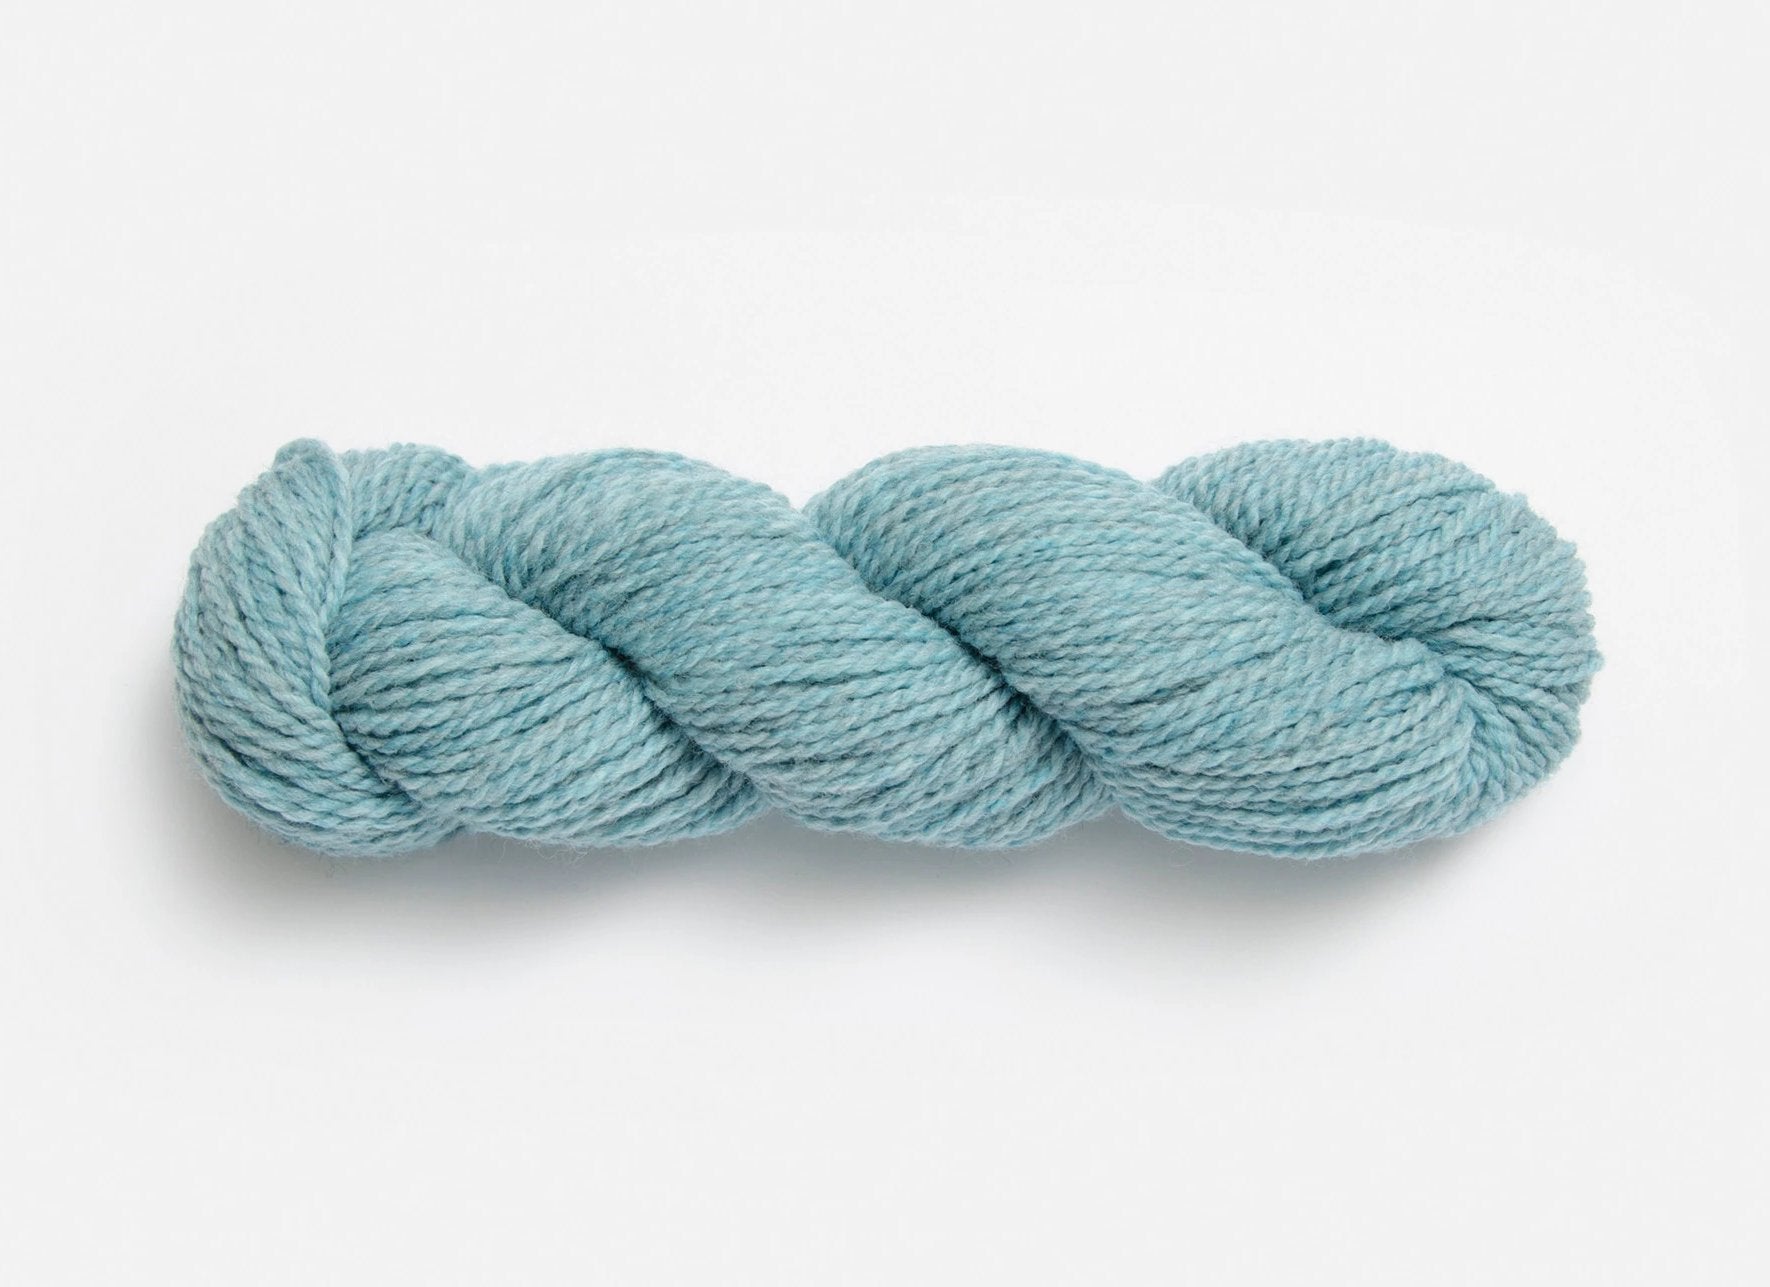 Blue Sky Fibers- Woolstok Bundles & Mini's 5g - Yarn Loop